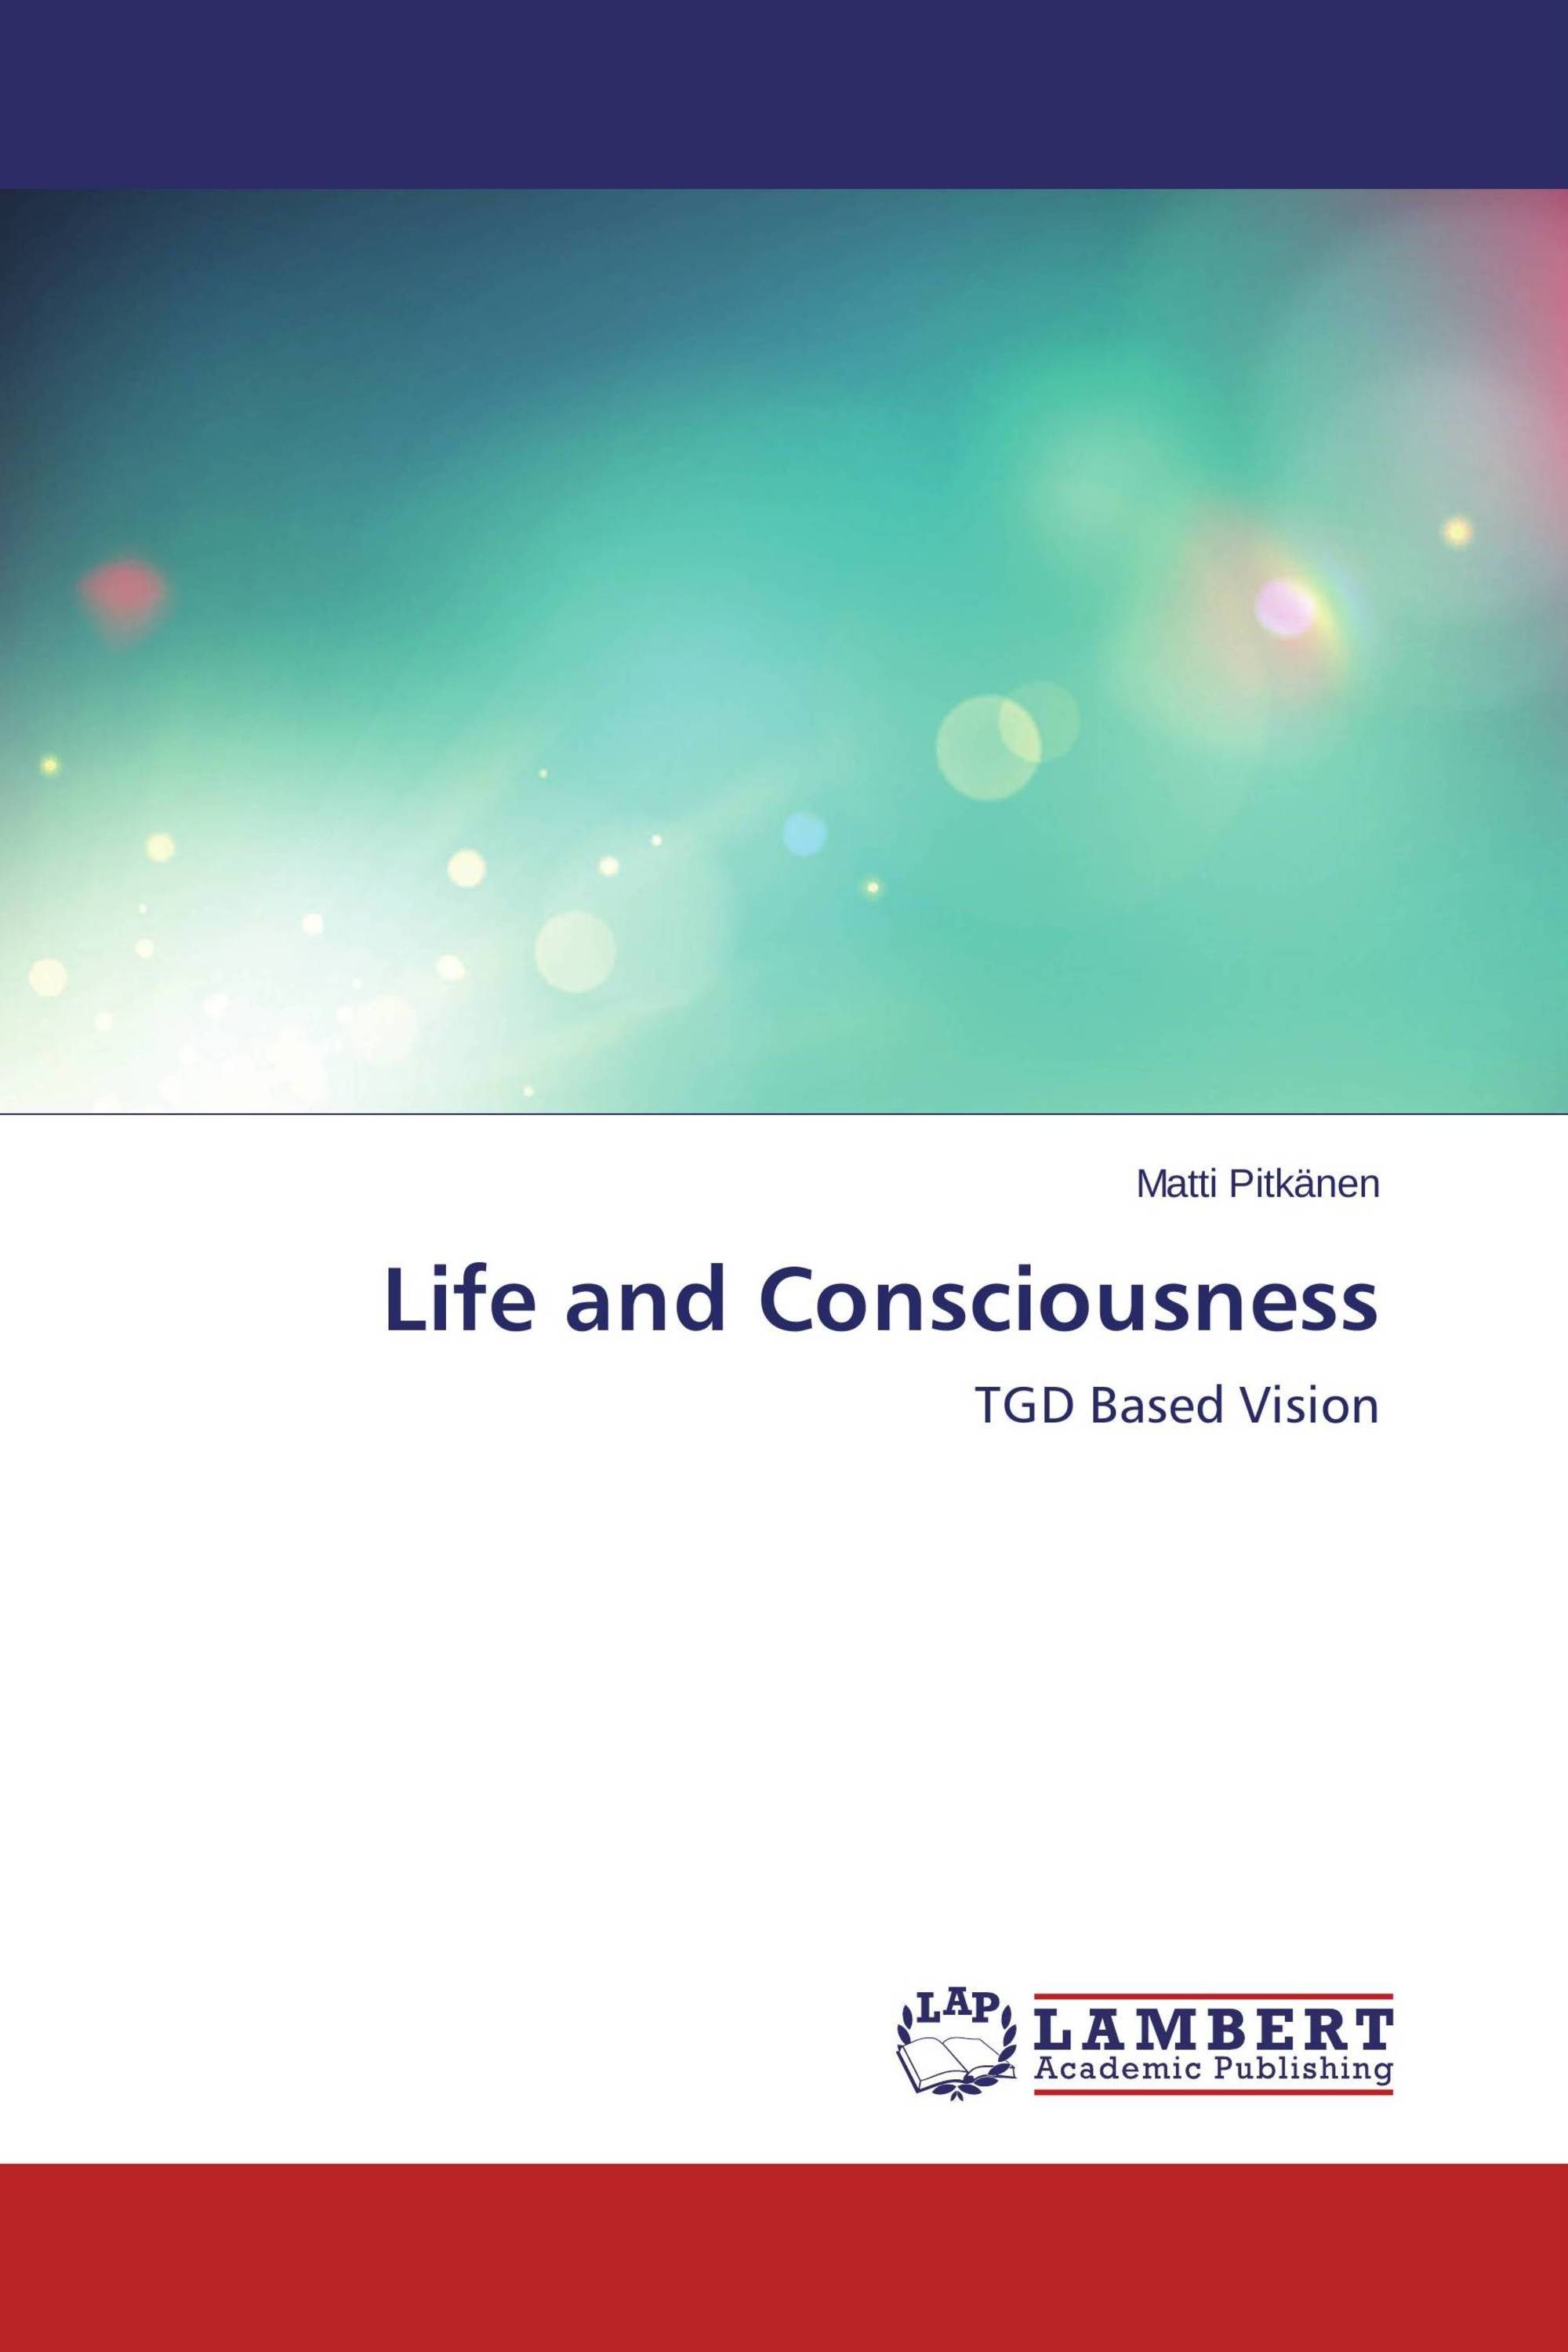 Life and Consciousness